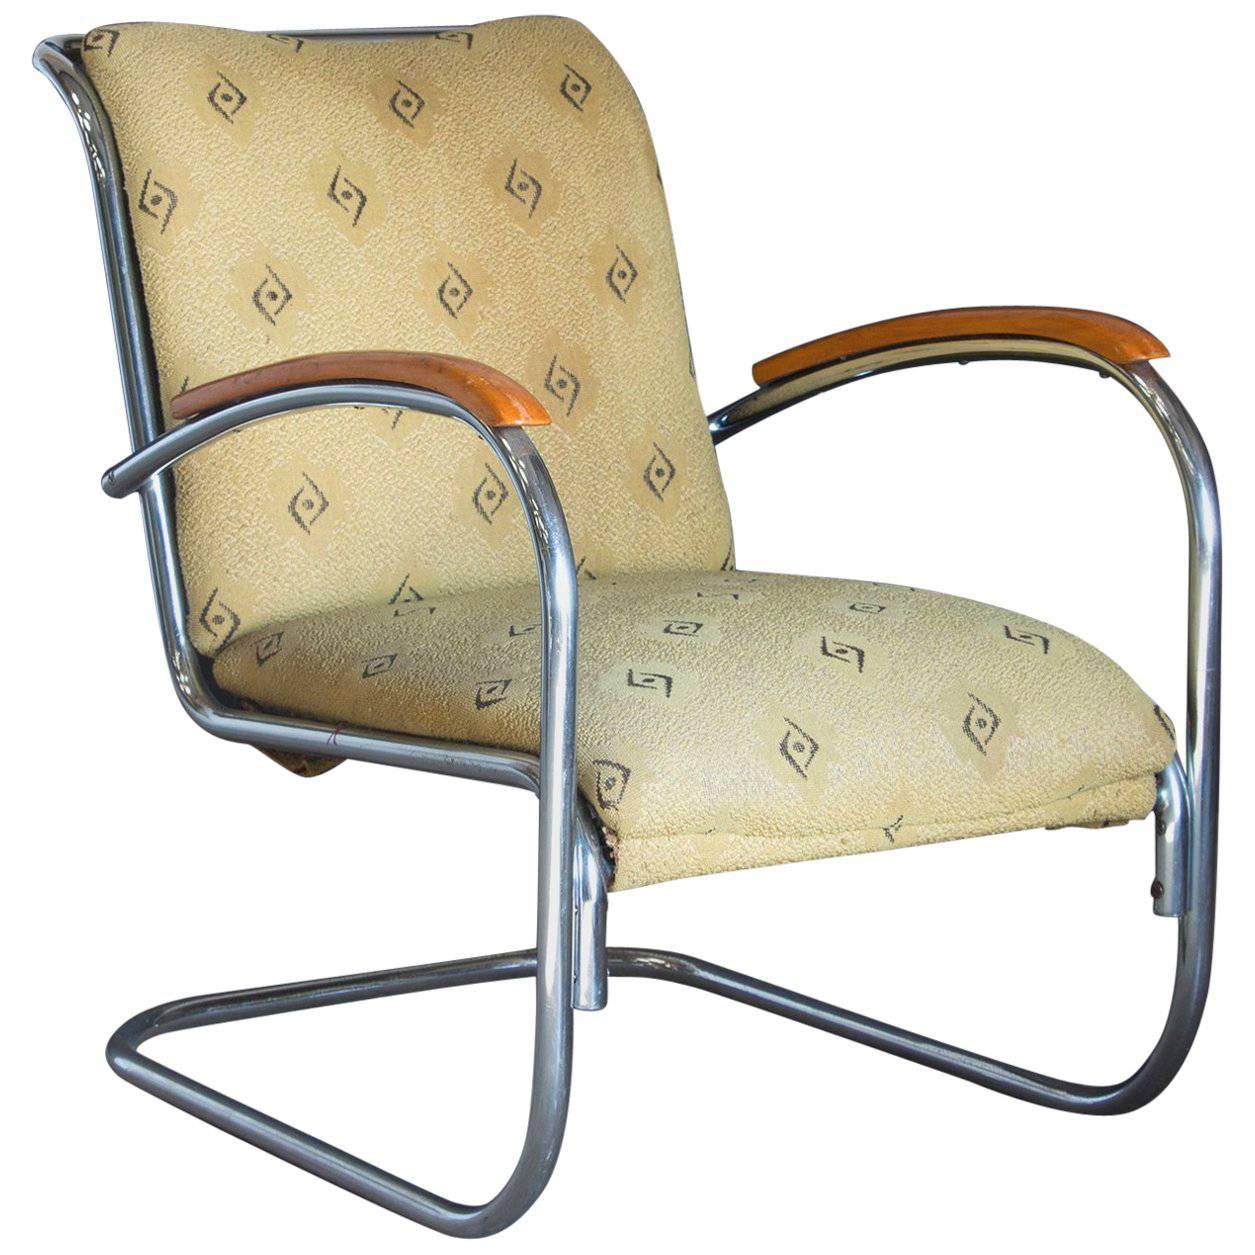 Fauteuil tubulaire original, ancien fauteuil vintage avec tissu d'origine, vers 1930